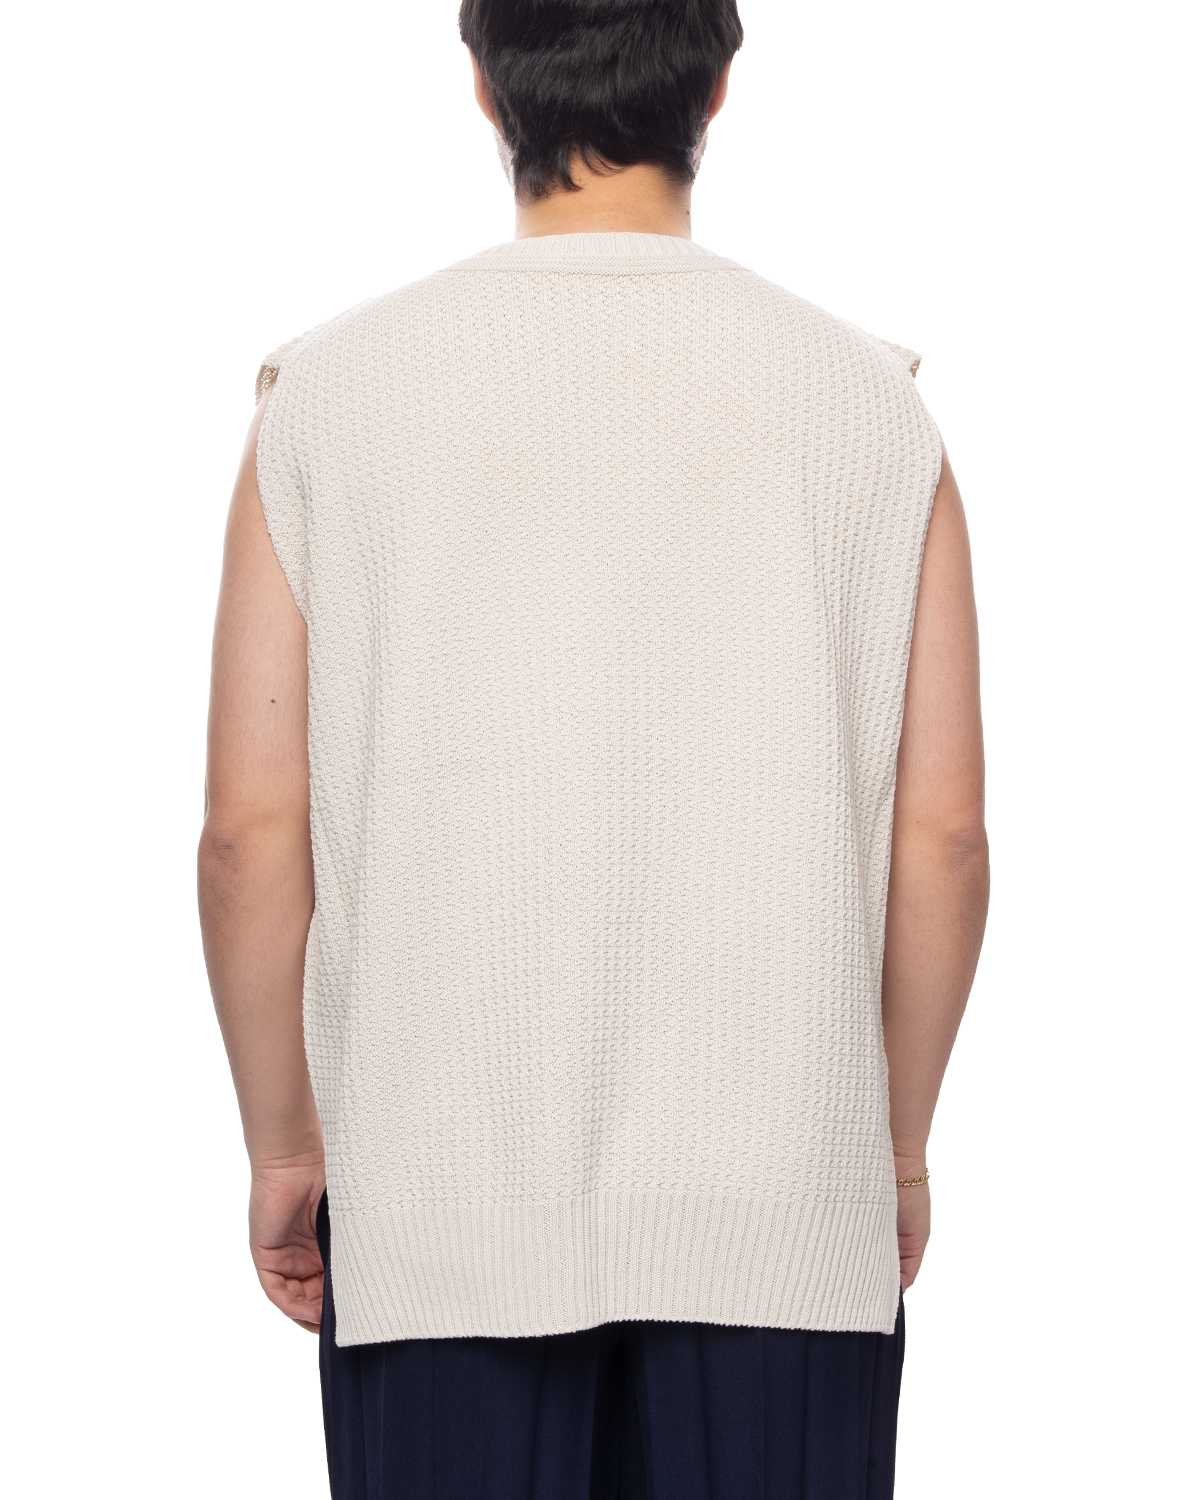 Common Knit Vest White (no.1)